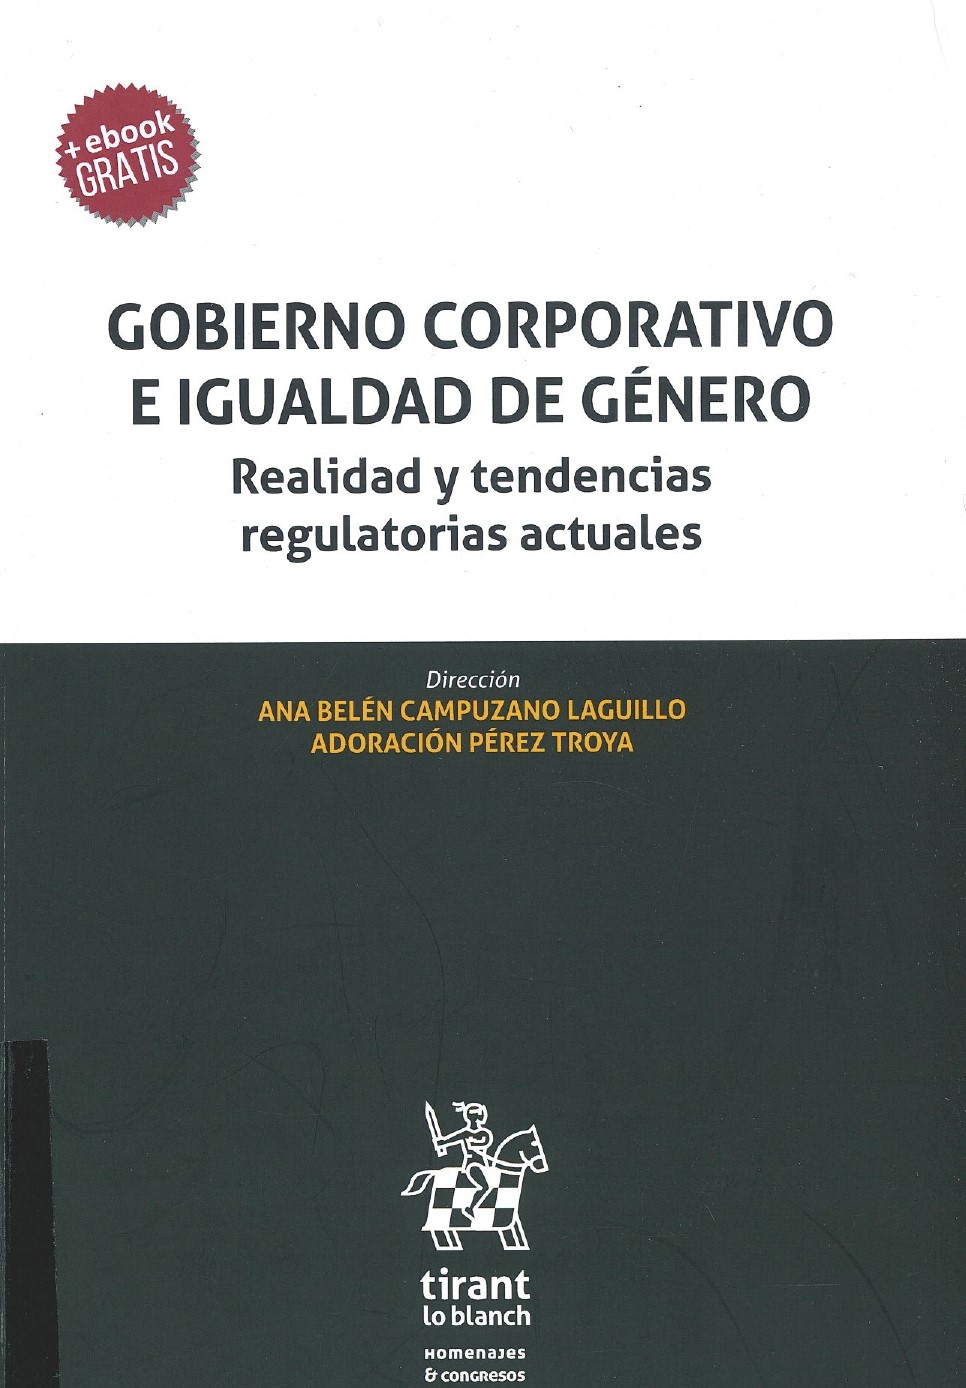 Imagen de portada del libro Gobierno corporativo e igualdad de género